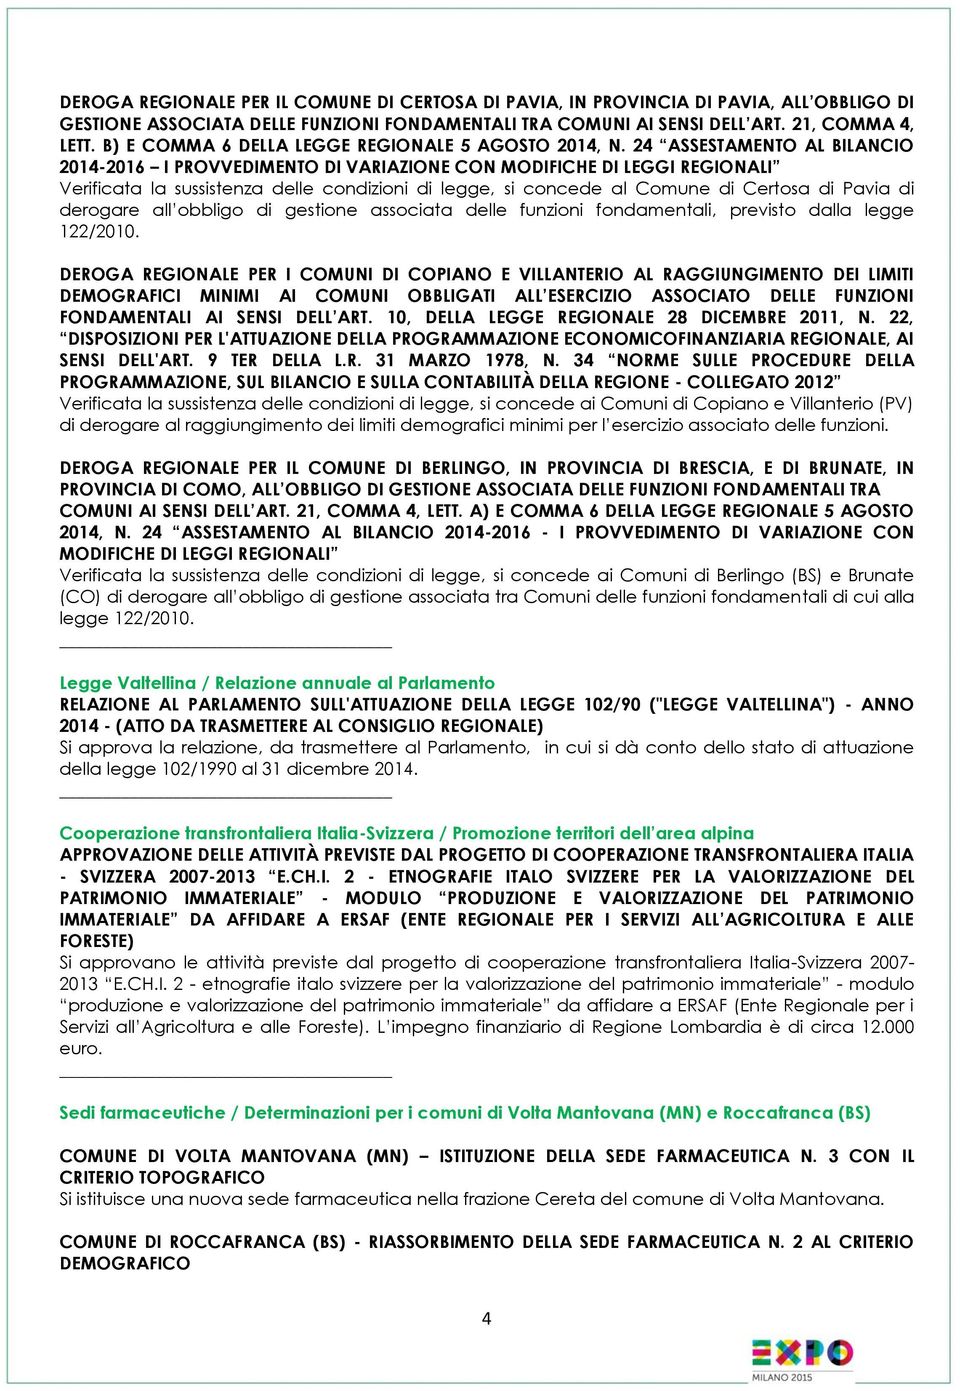 24 ASSESTAMENTO AL BILANCIO 2014-2016 I PROVVEDIMENTO DI VARIAZIONE CON MODIFICHE DI LEGGI REGIONALI Verificata la sussistenza delle condizioni di legge, si concede al Comune di Certosa di Pavia di